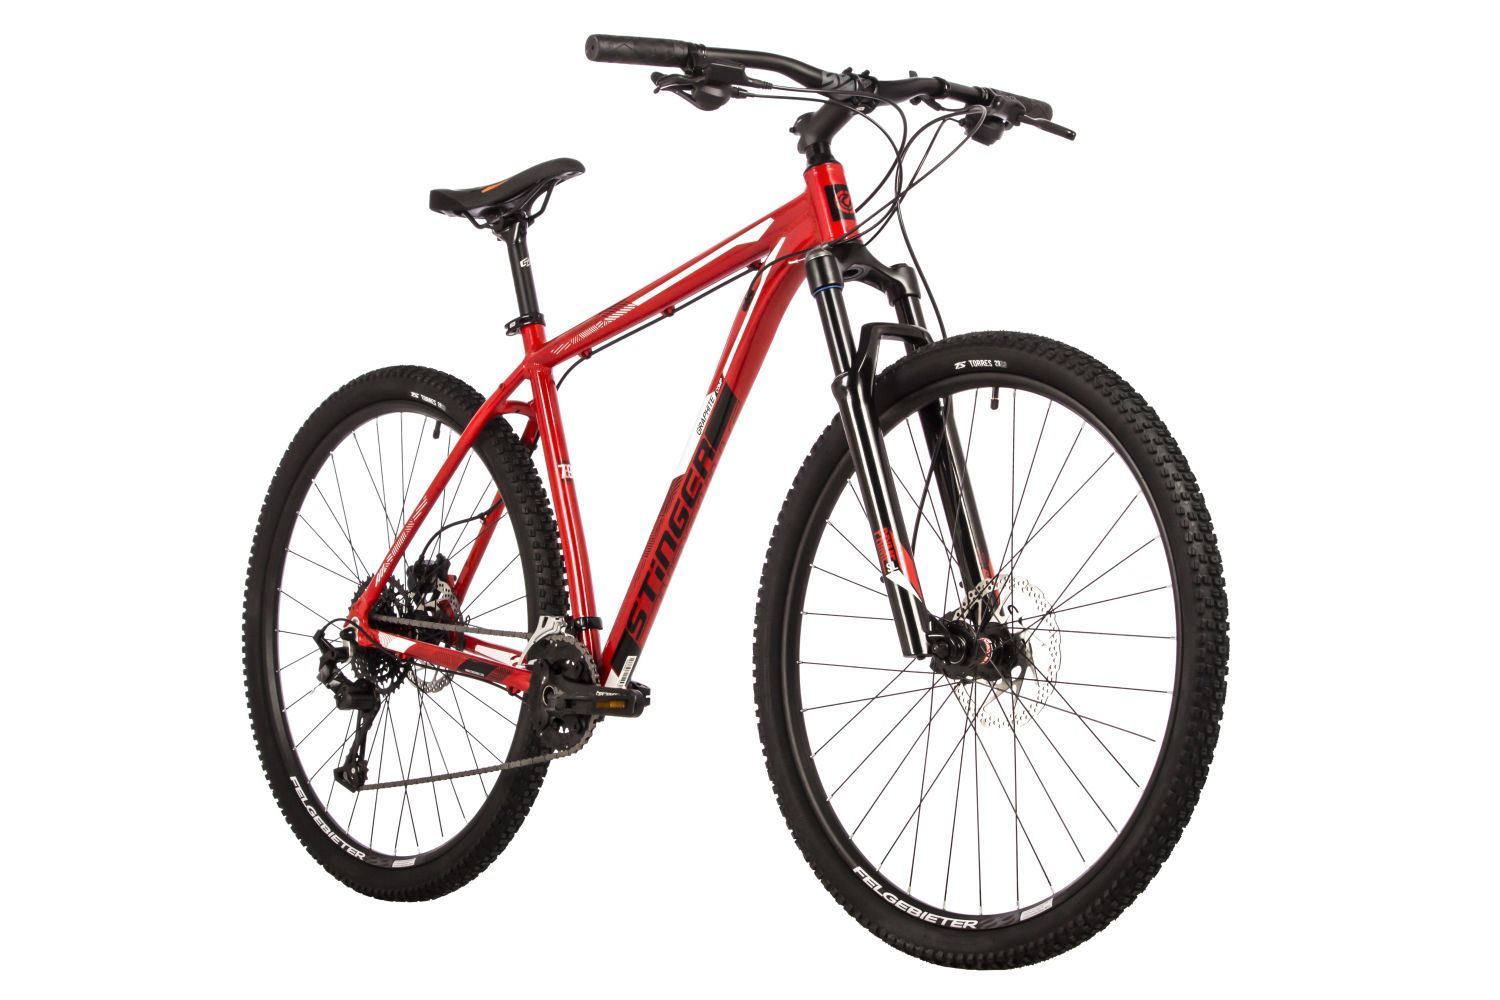 ВелосипедвзрослыйгорныйSTINGER29"GRAPHITECOMPскоростнойхардтейлнарост180-190см,18скоростей,алюминиеваярама20",красный